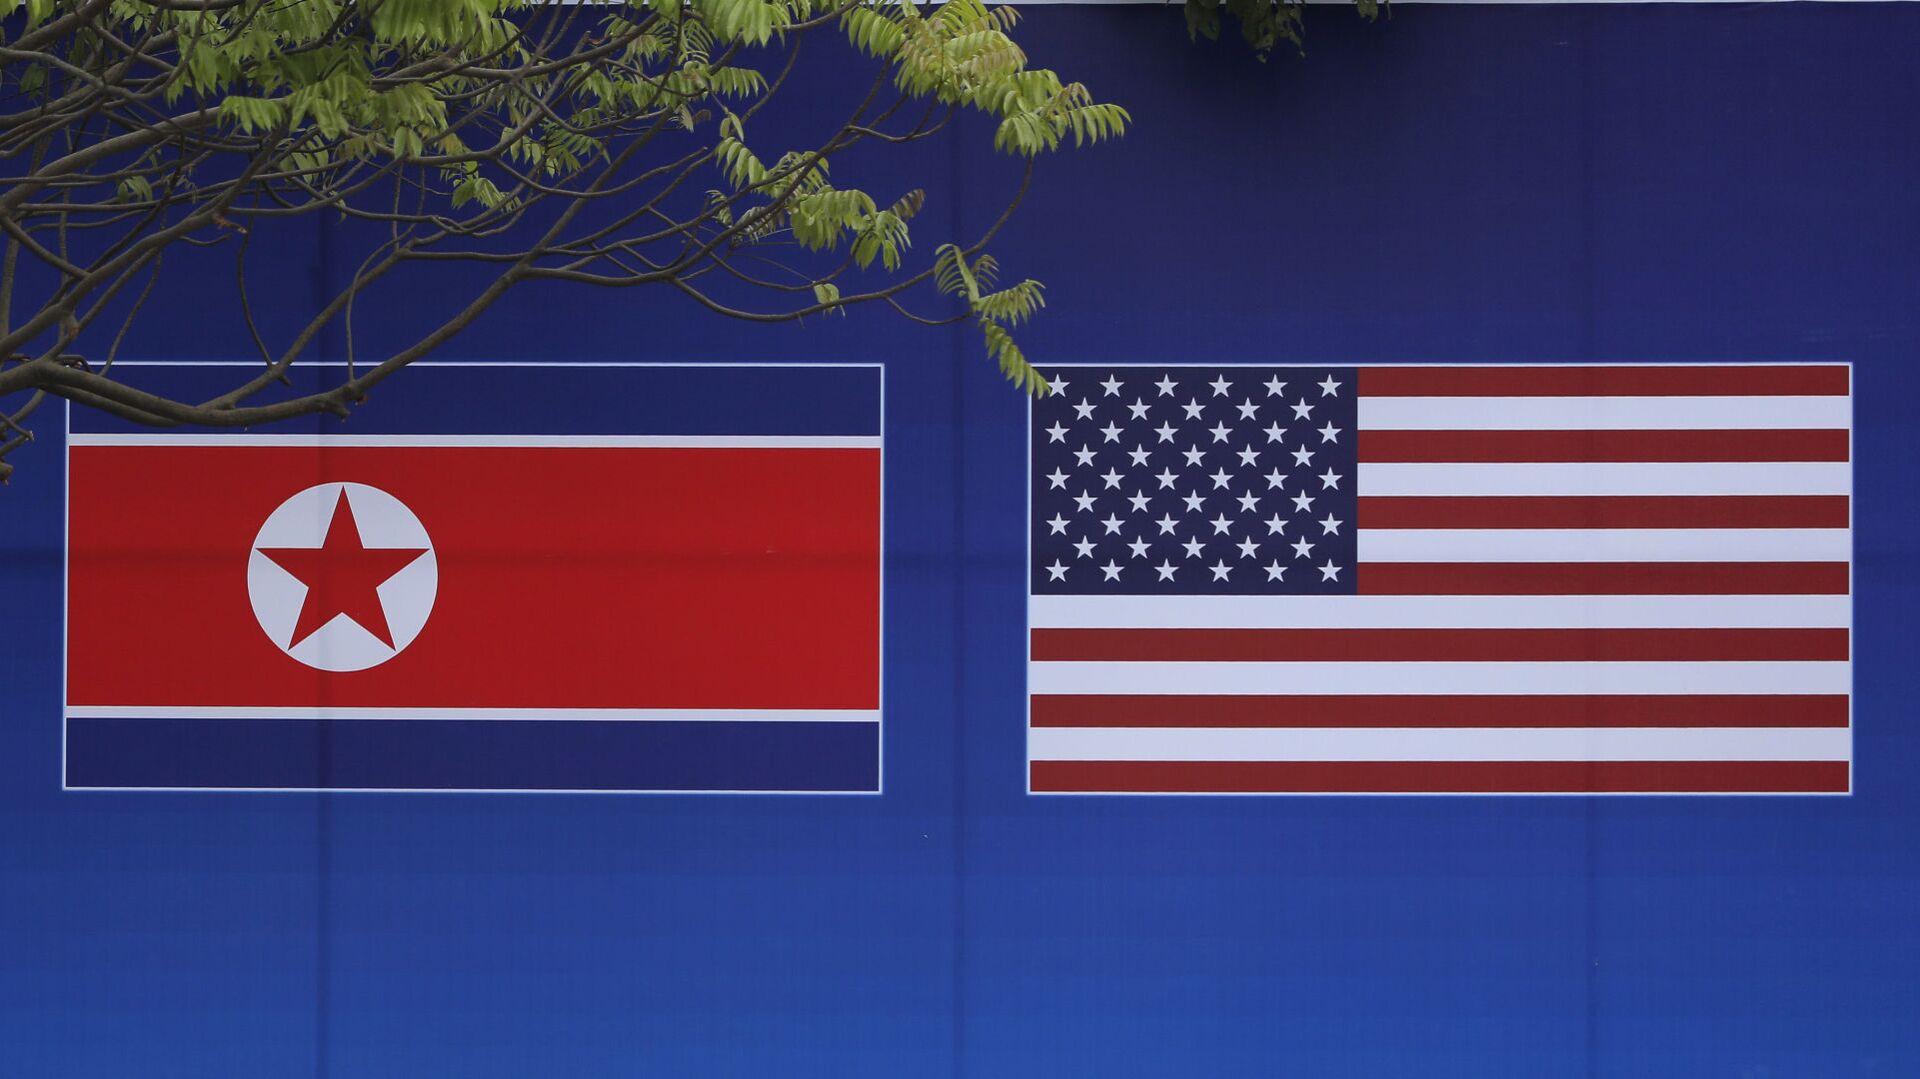 Cư dân Hà Nội tạo dáng trước hình ảnh lá cờ Bắc Triều Tiên và Mỹ trong những ngày diễn ra hội nghị thượng đỉnh Bắc Triều Tiên-Mỹ tại Hà Nội - Sputnik Việt Nam, 1920, 11.02.2022